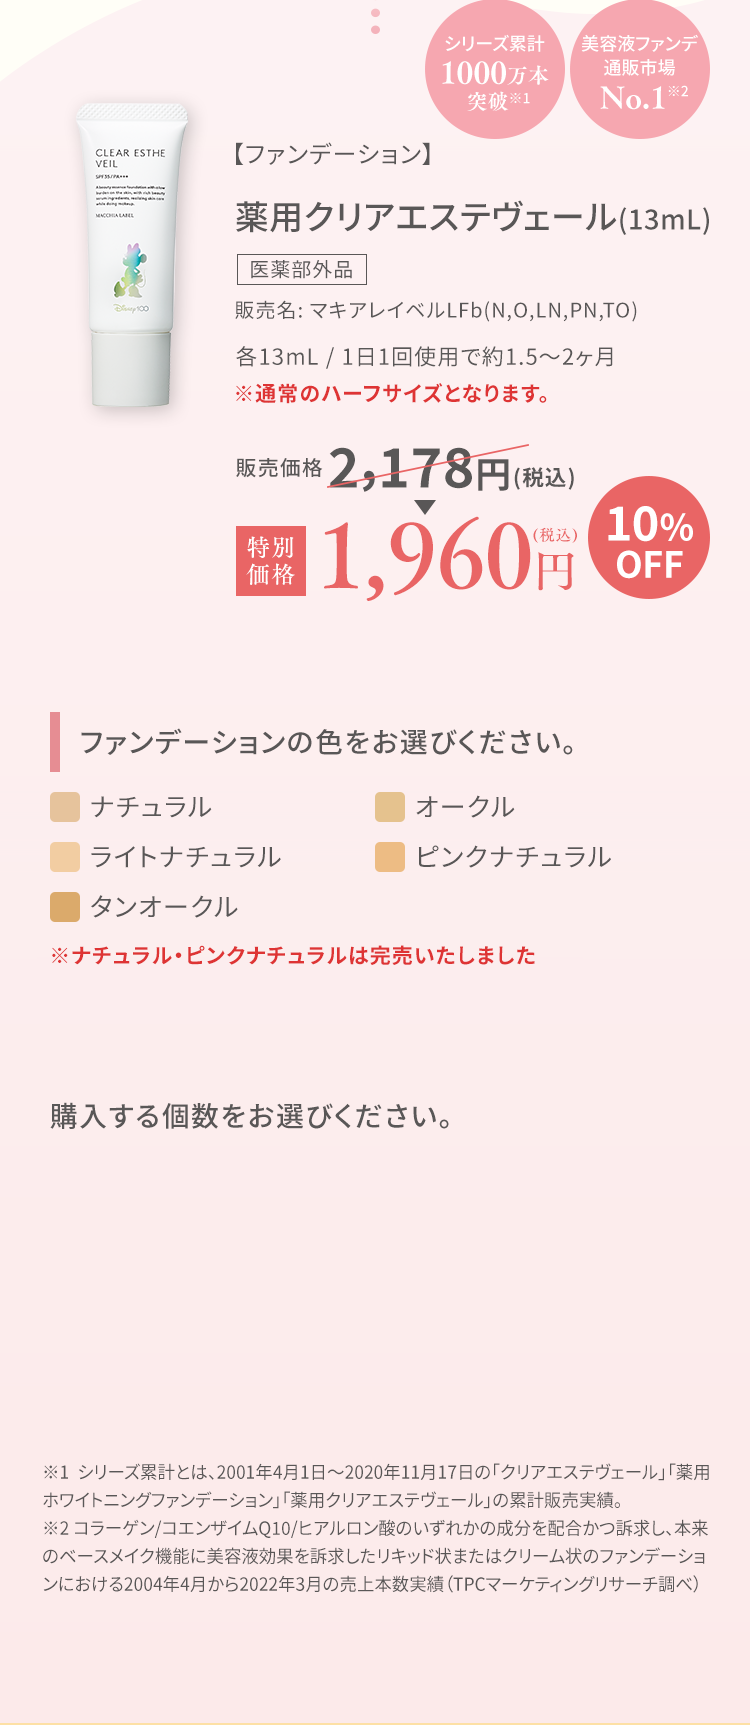 【ファンデーション】薬用クリアエステヴェール(13mL) 2,178円(税込)